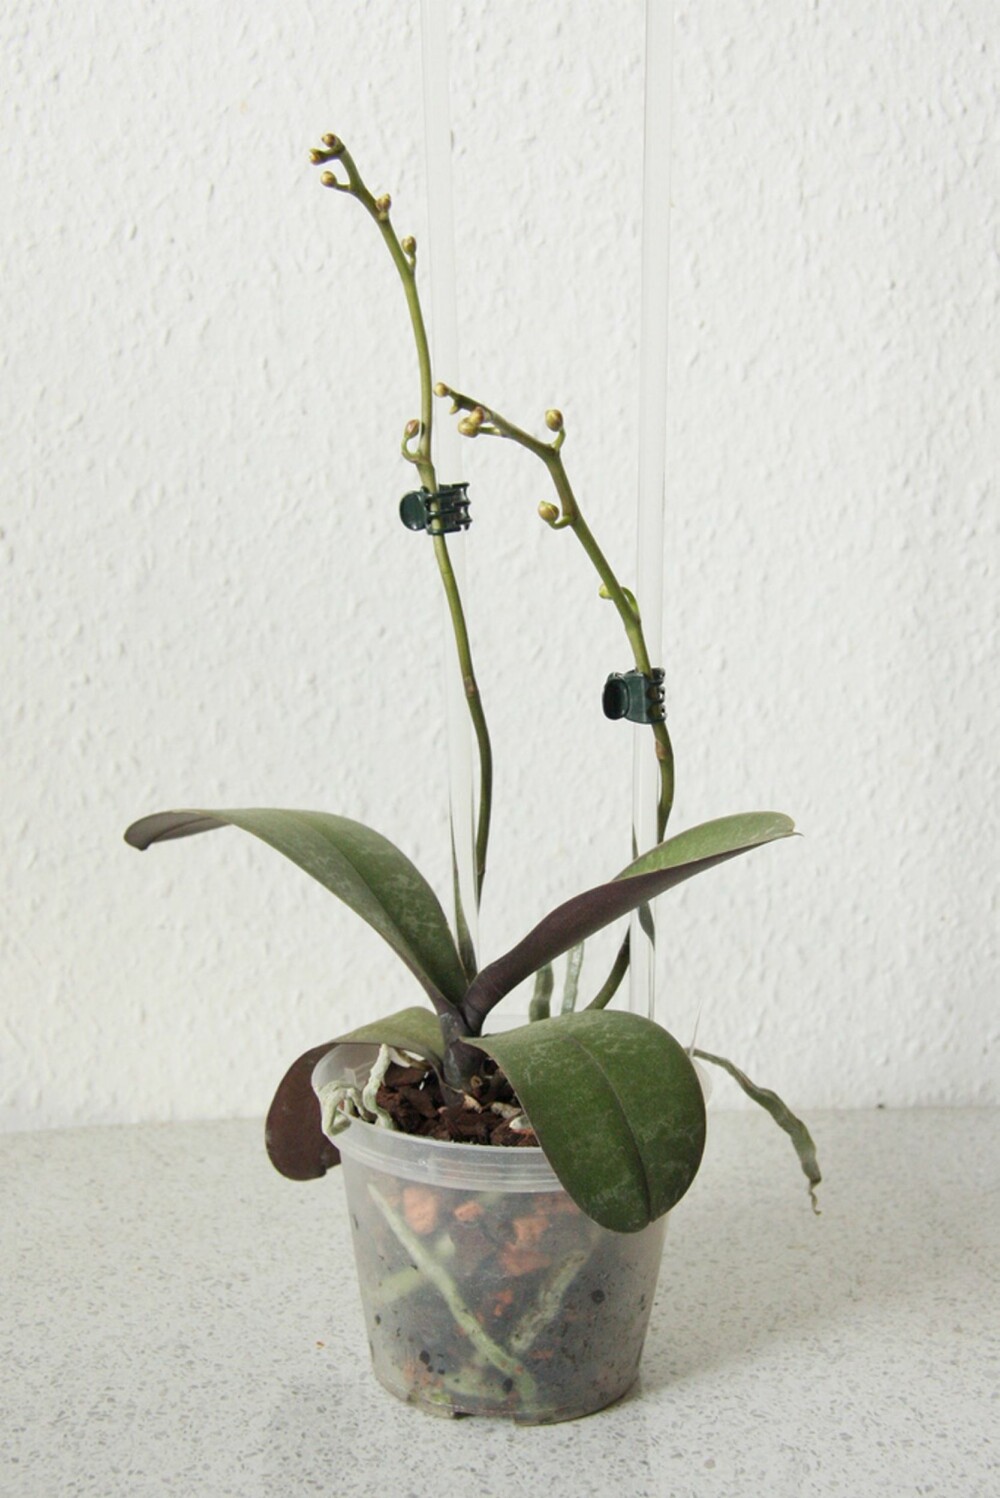 TRIST DEKOR: Litt begredelig når orkideen er grønn. Dette er jo et velkjent syn i et hjem. Men her kommer det nye blomster.